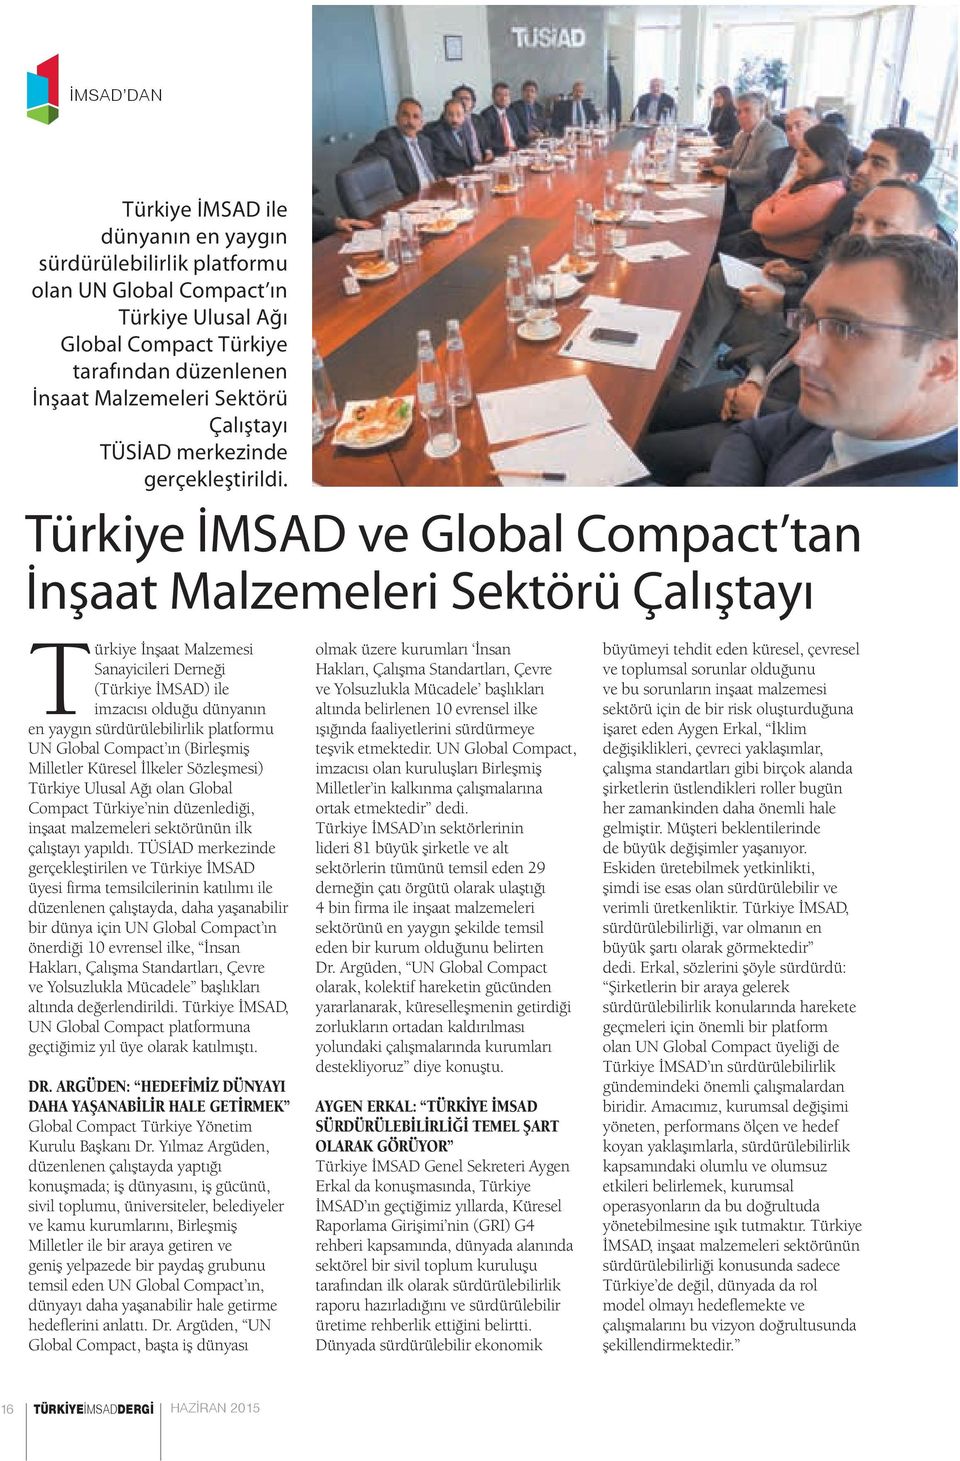 Türkiye İMSAD ve Global Compact tan İnşaat Malzemeleri Sektörü Çalıştayı Türkiye İnşaat Malzemesi Sanayicileri Derneği (Türkiye İMSAD) ile imzacısı olduğu dünyanın en yaygın sürdürülebilirlik